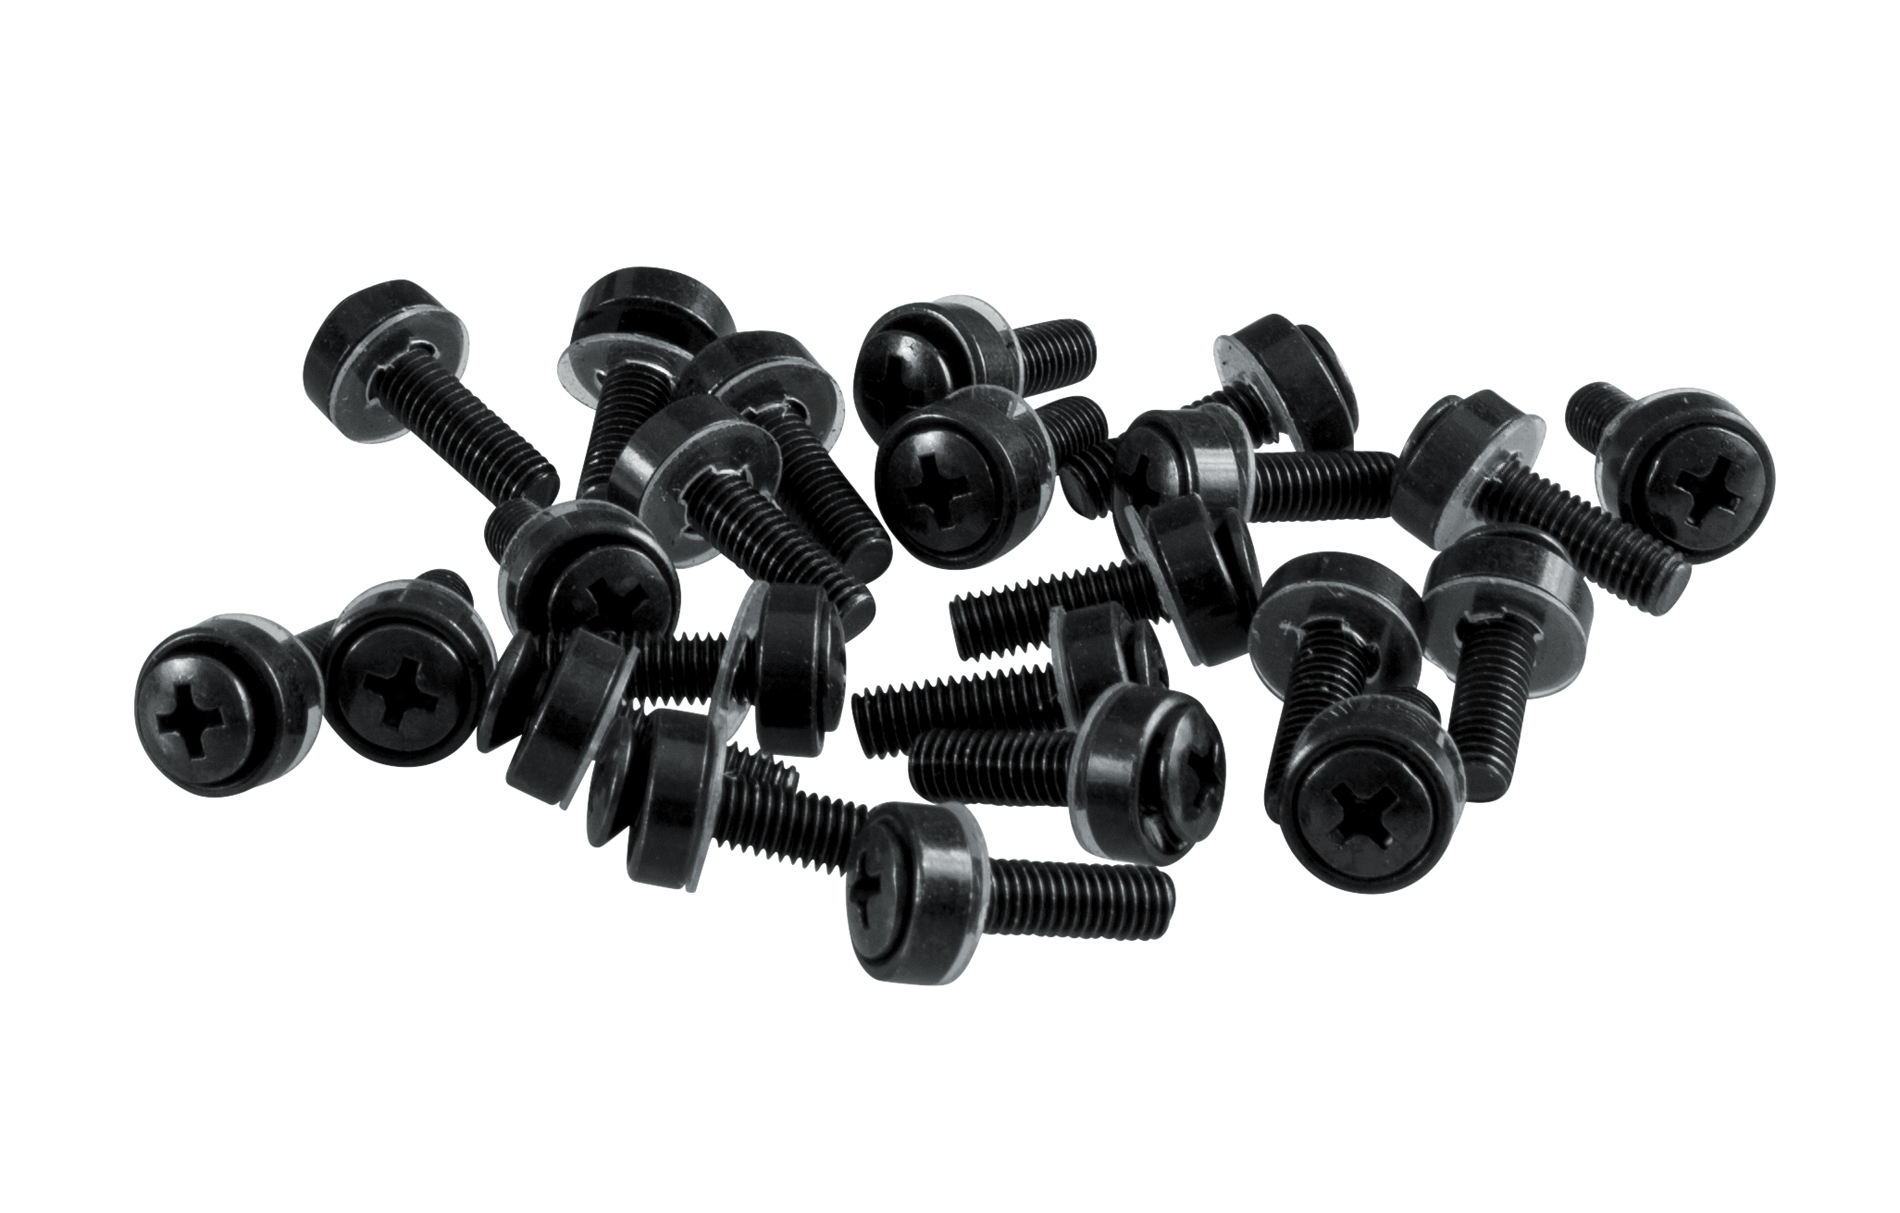 50-pack of 10/32 rack screws-GRW-SCRW050